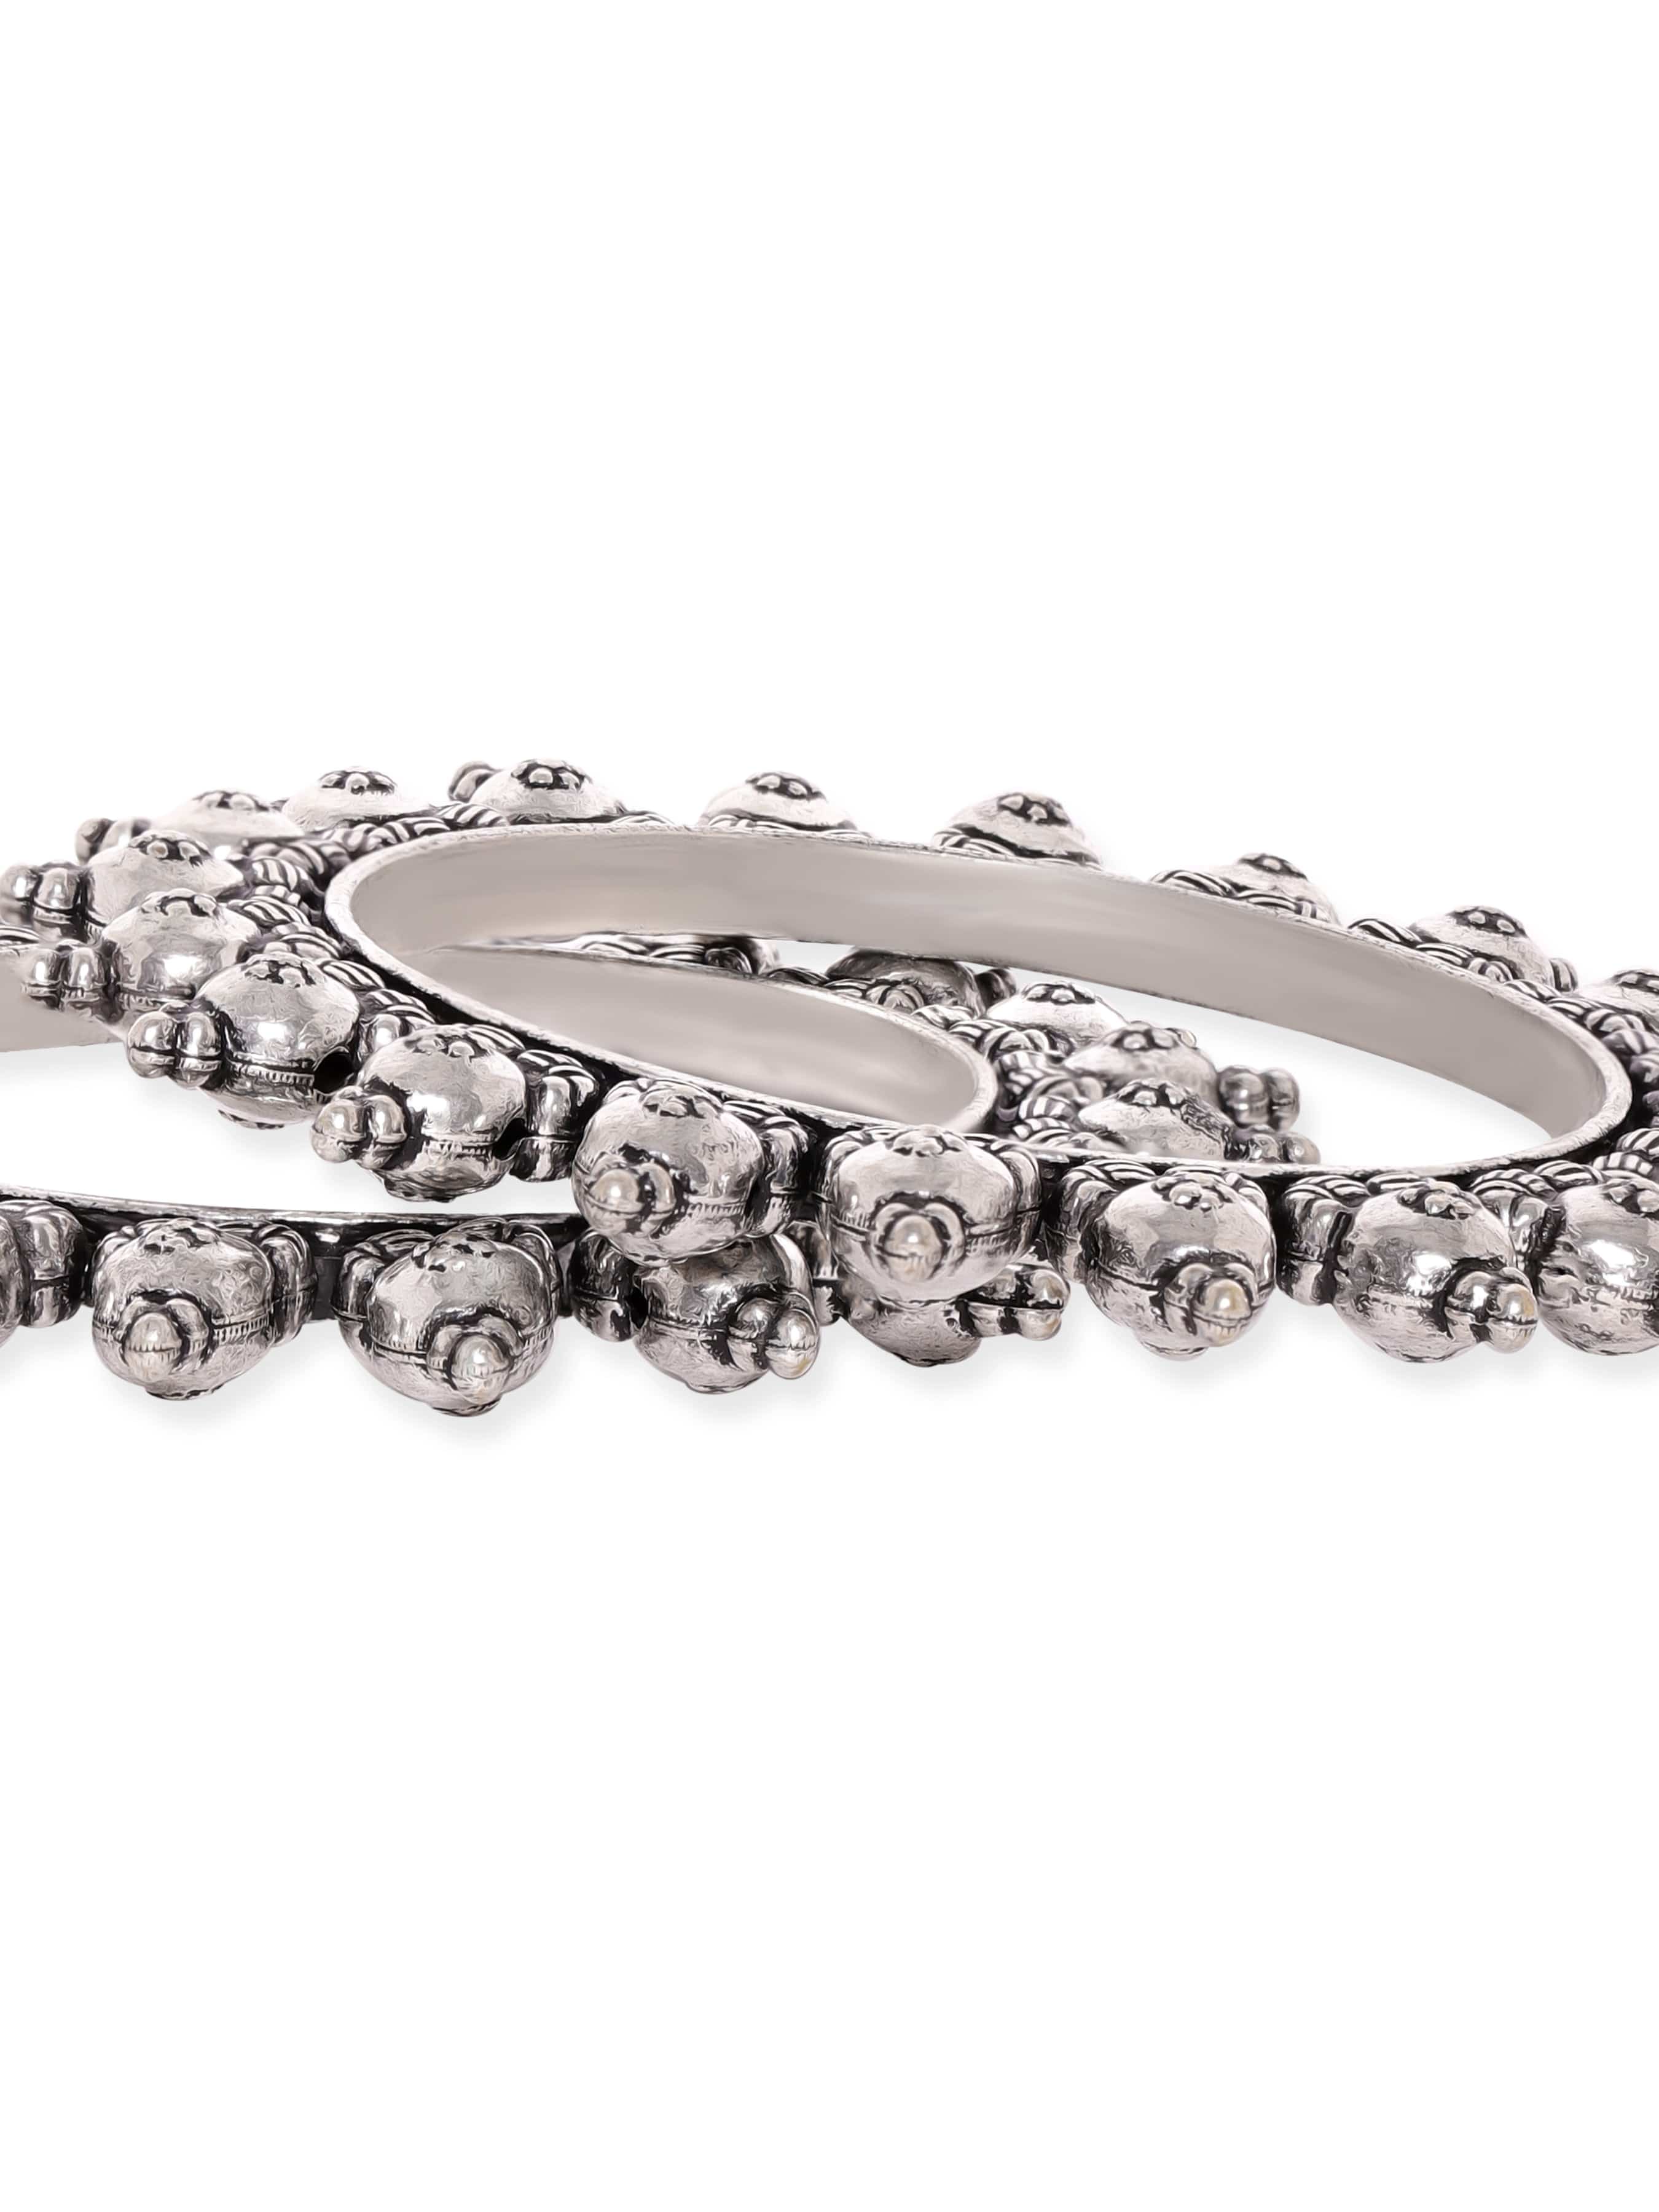 Heavy Sterling Silver Bracelet Artisan Jewelry Handmade | Etsy | Artisan  jewelry handmade, Artisan jewelry, Sterling silver bracelets